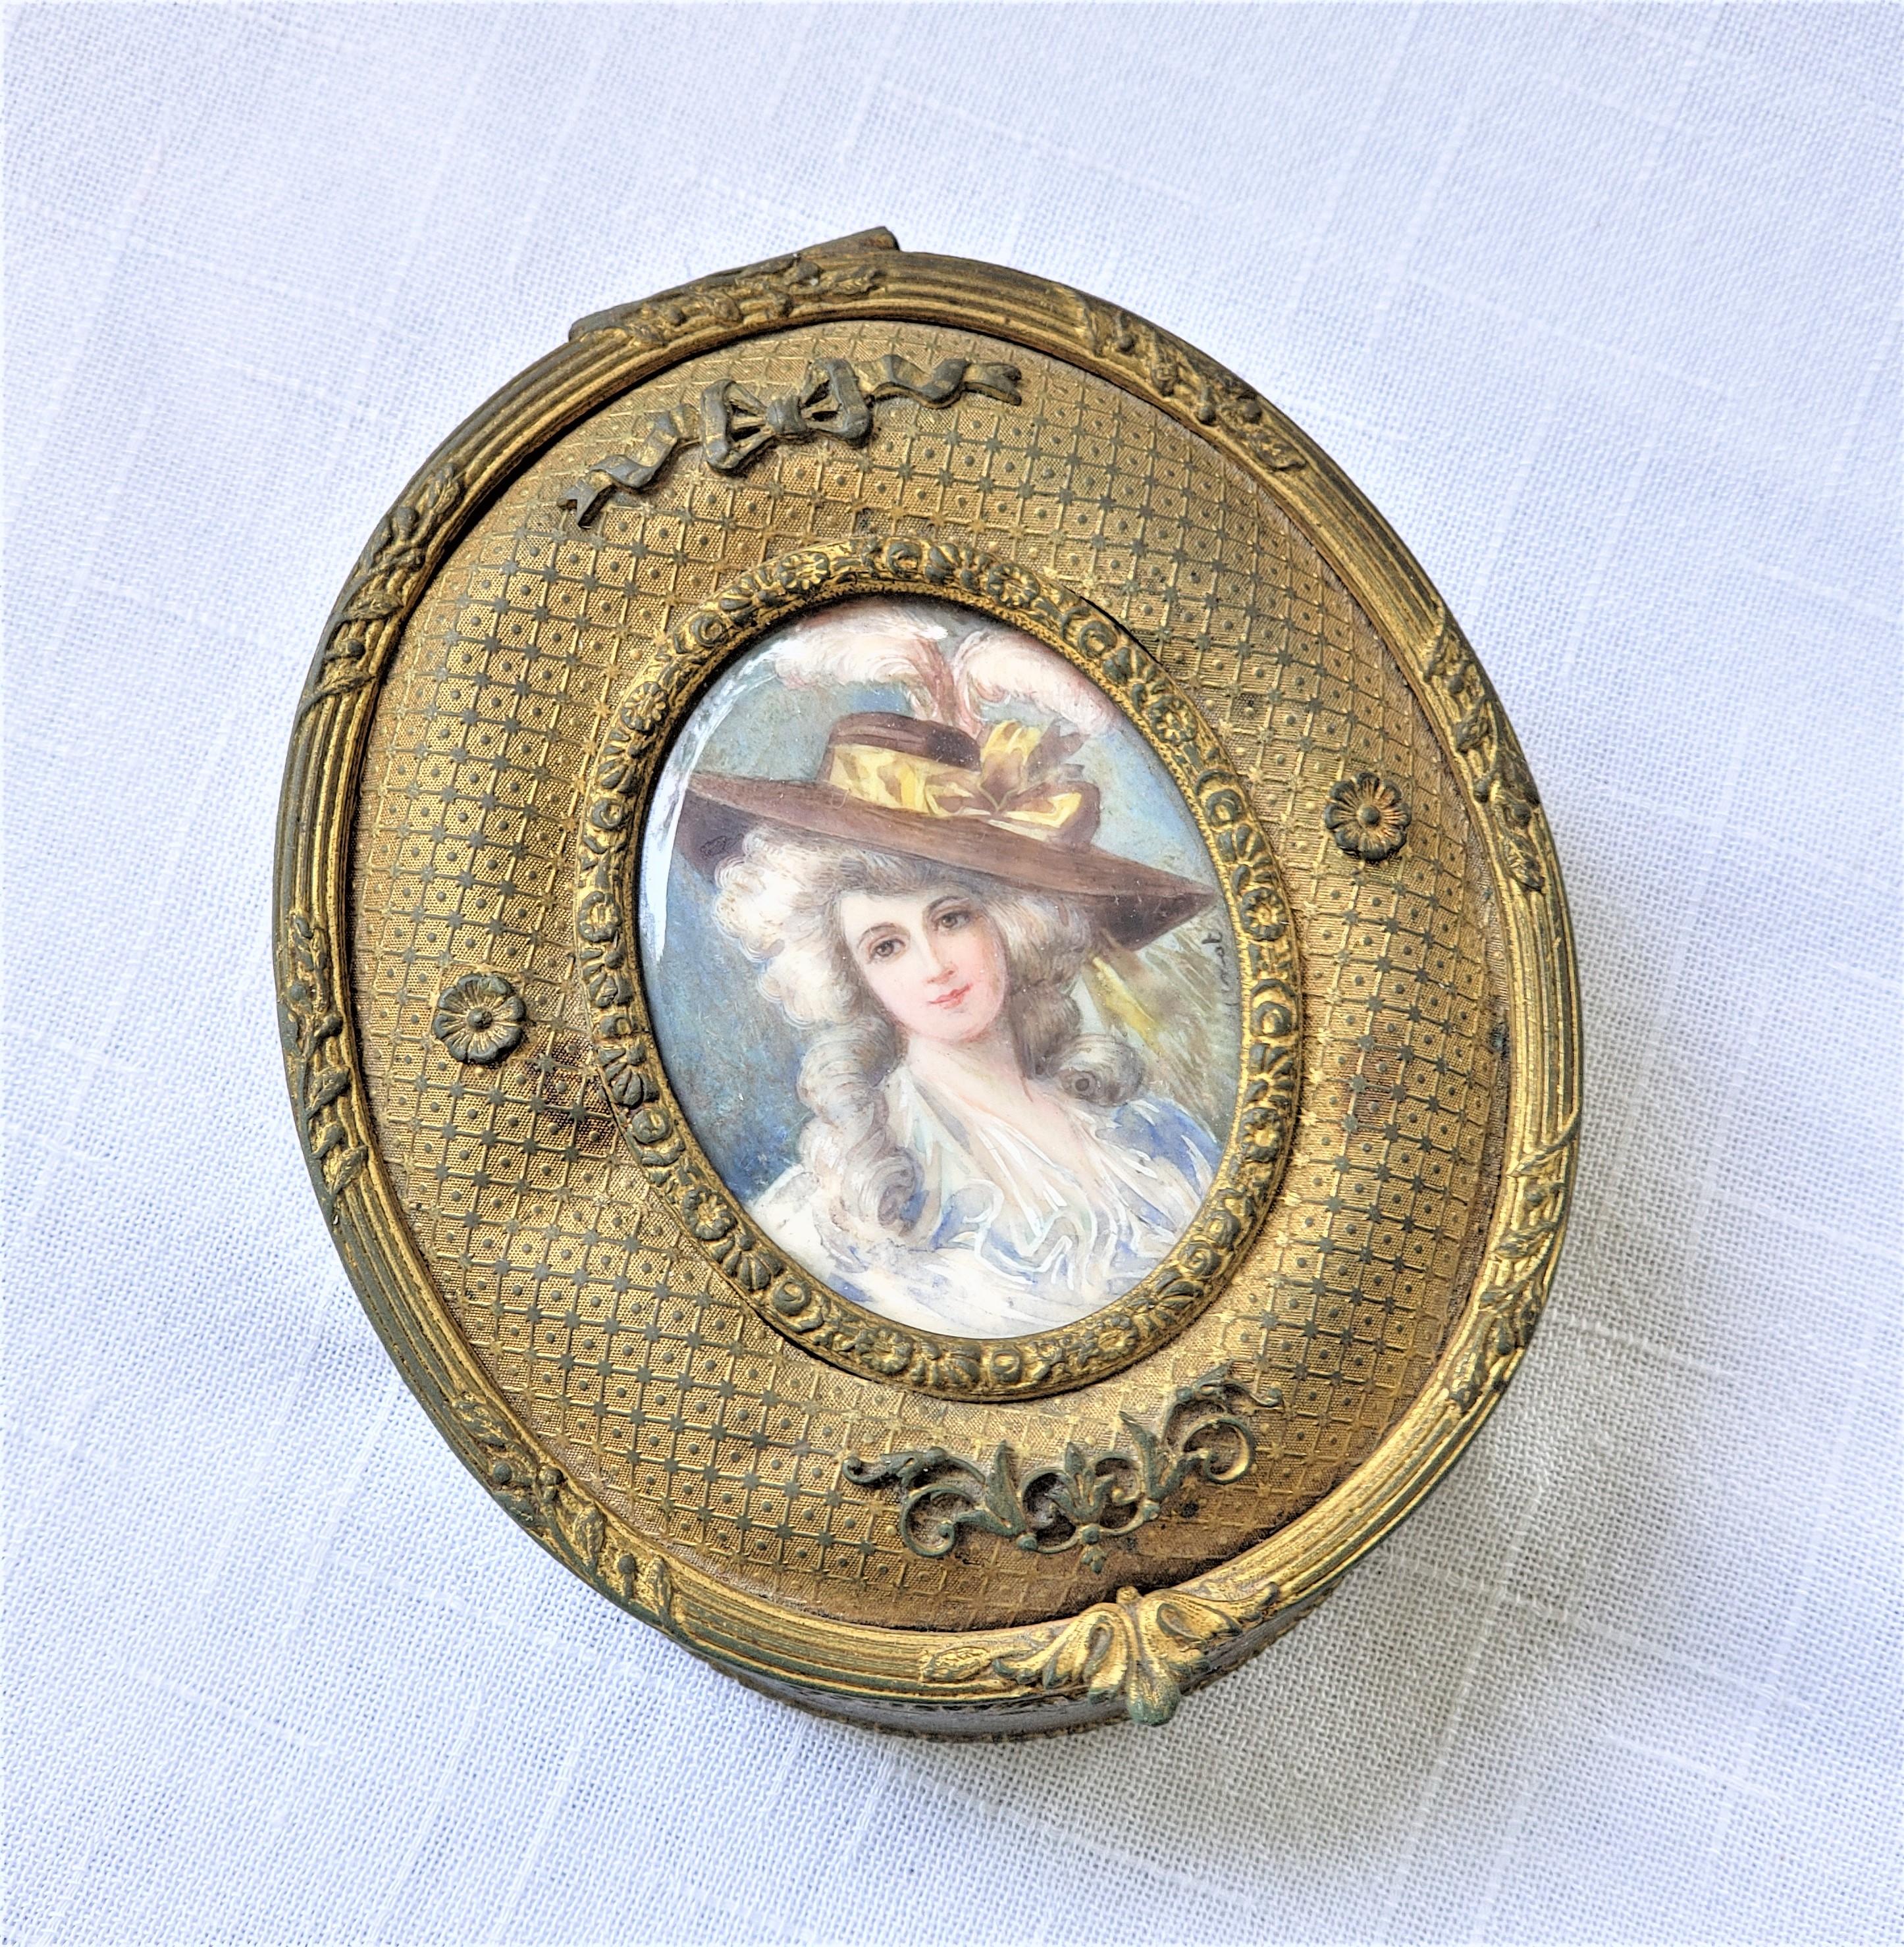 Cette petite boîte à bijoux ou décorative ne porte pas de signature de fabricant, mais on présume qu'elle provient de France et qu'elle date d'environ 1900. Elle est réalisée dans un style néo-Renaissance. La boîte de forme ovale est composée de